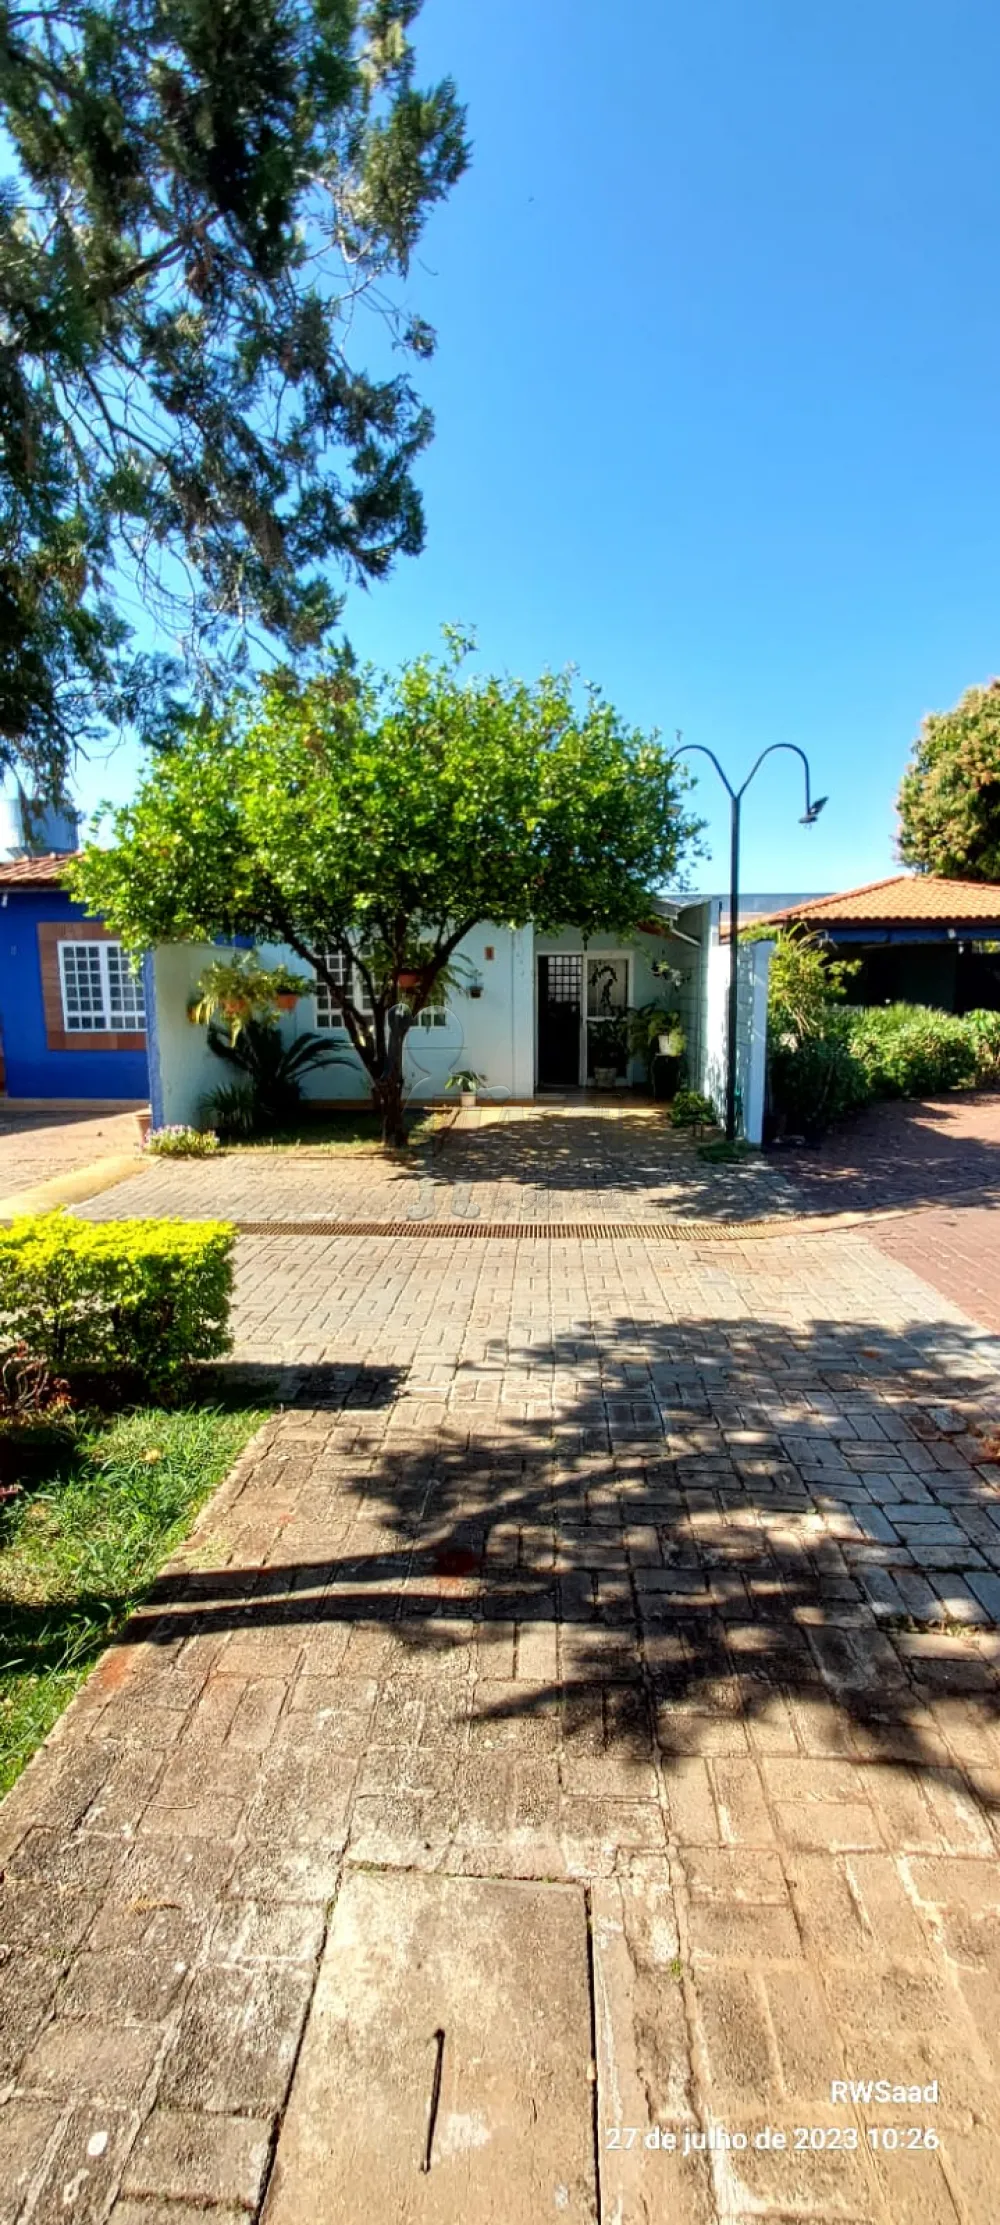 Comprar Casa condomínio / Padrão em Ribeirão Preto R$ 255.000,00 - Foto 1